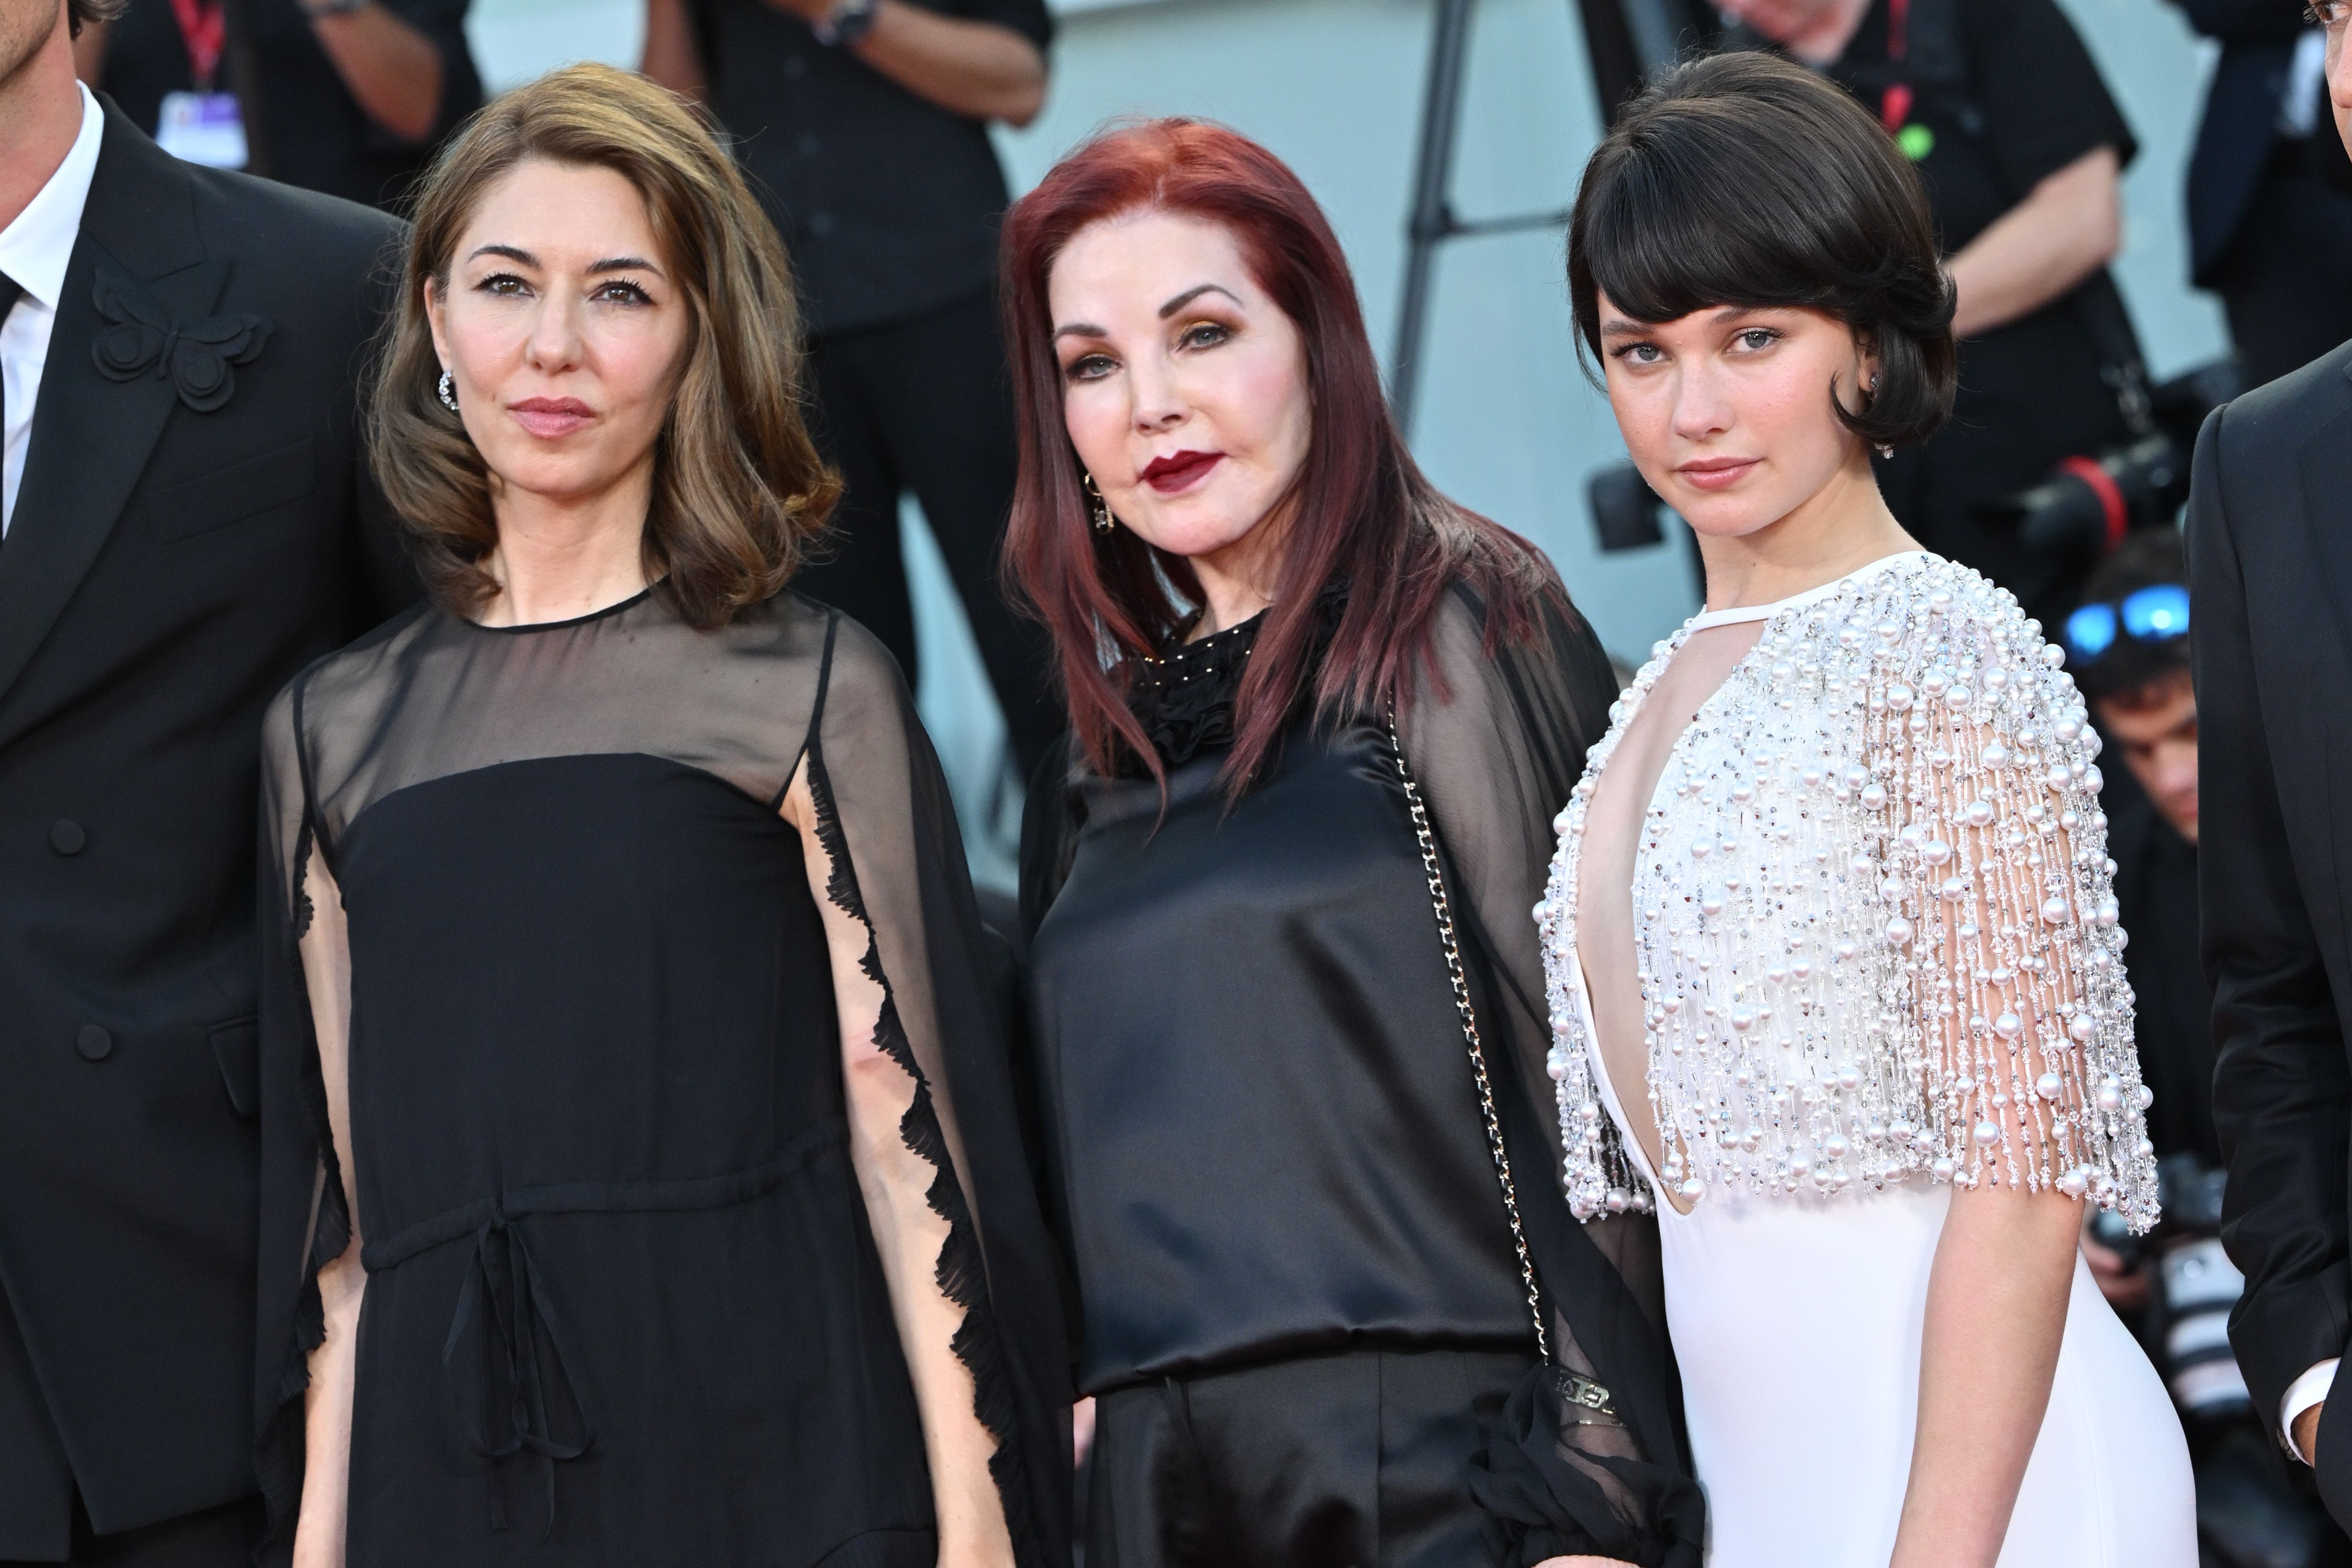 Sofia Coppola shares her style secrets: 'A kind of uniform helps